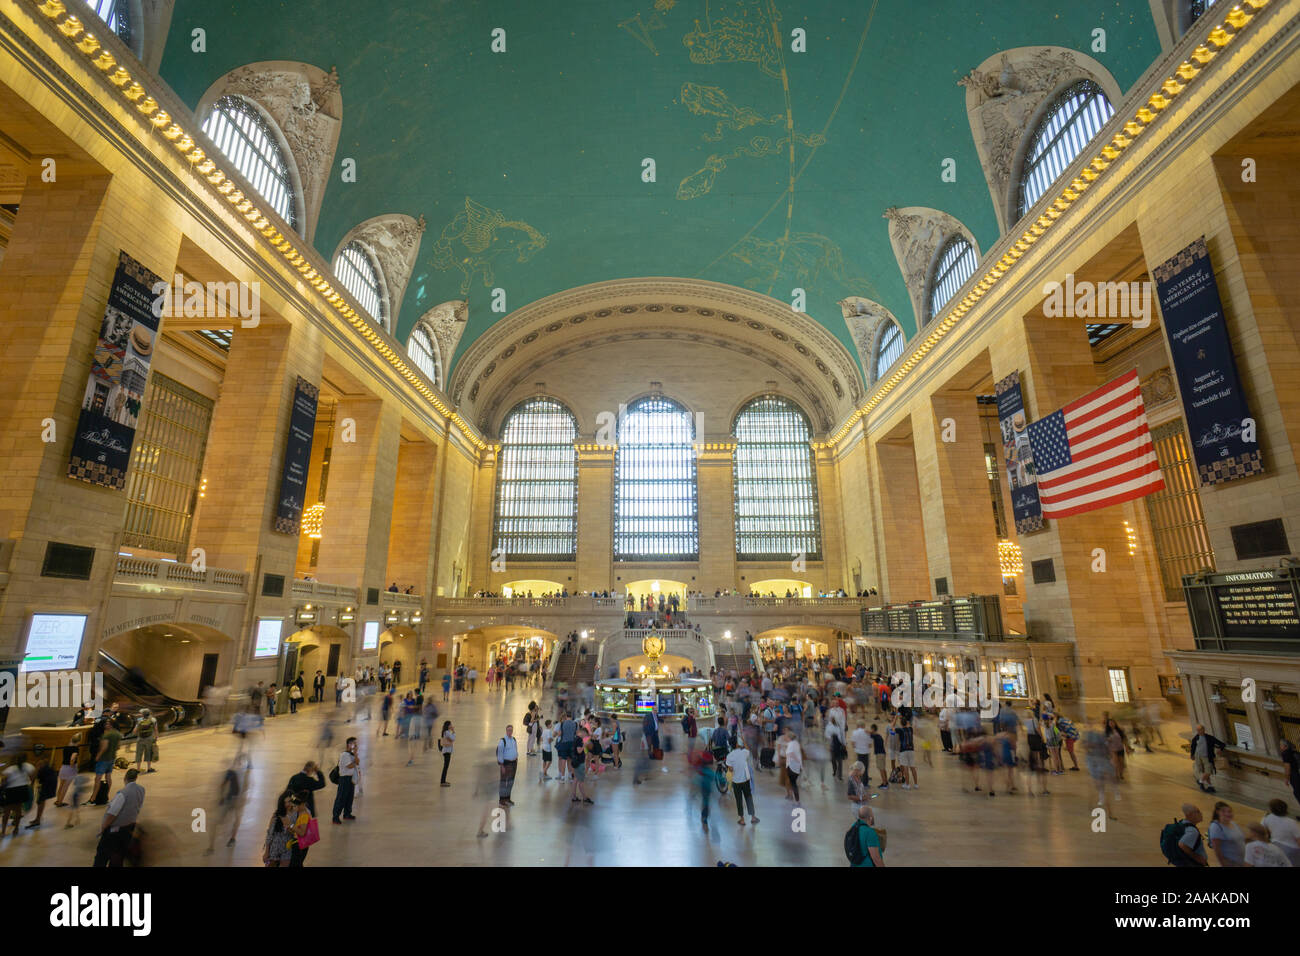 New York, USA - 20. August 2018: Blick in die Haupthalle des Grand Central Terminal Station mit vielen Völkern in Bewegung. Stockfoto